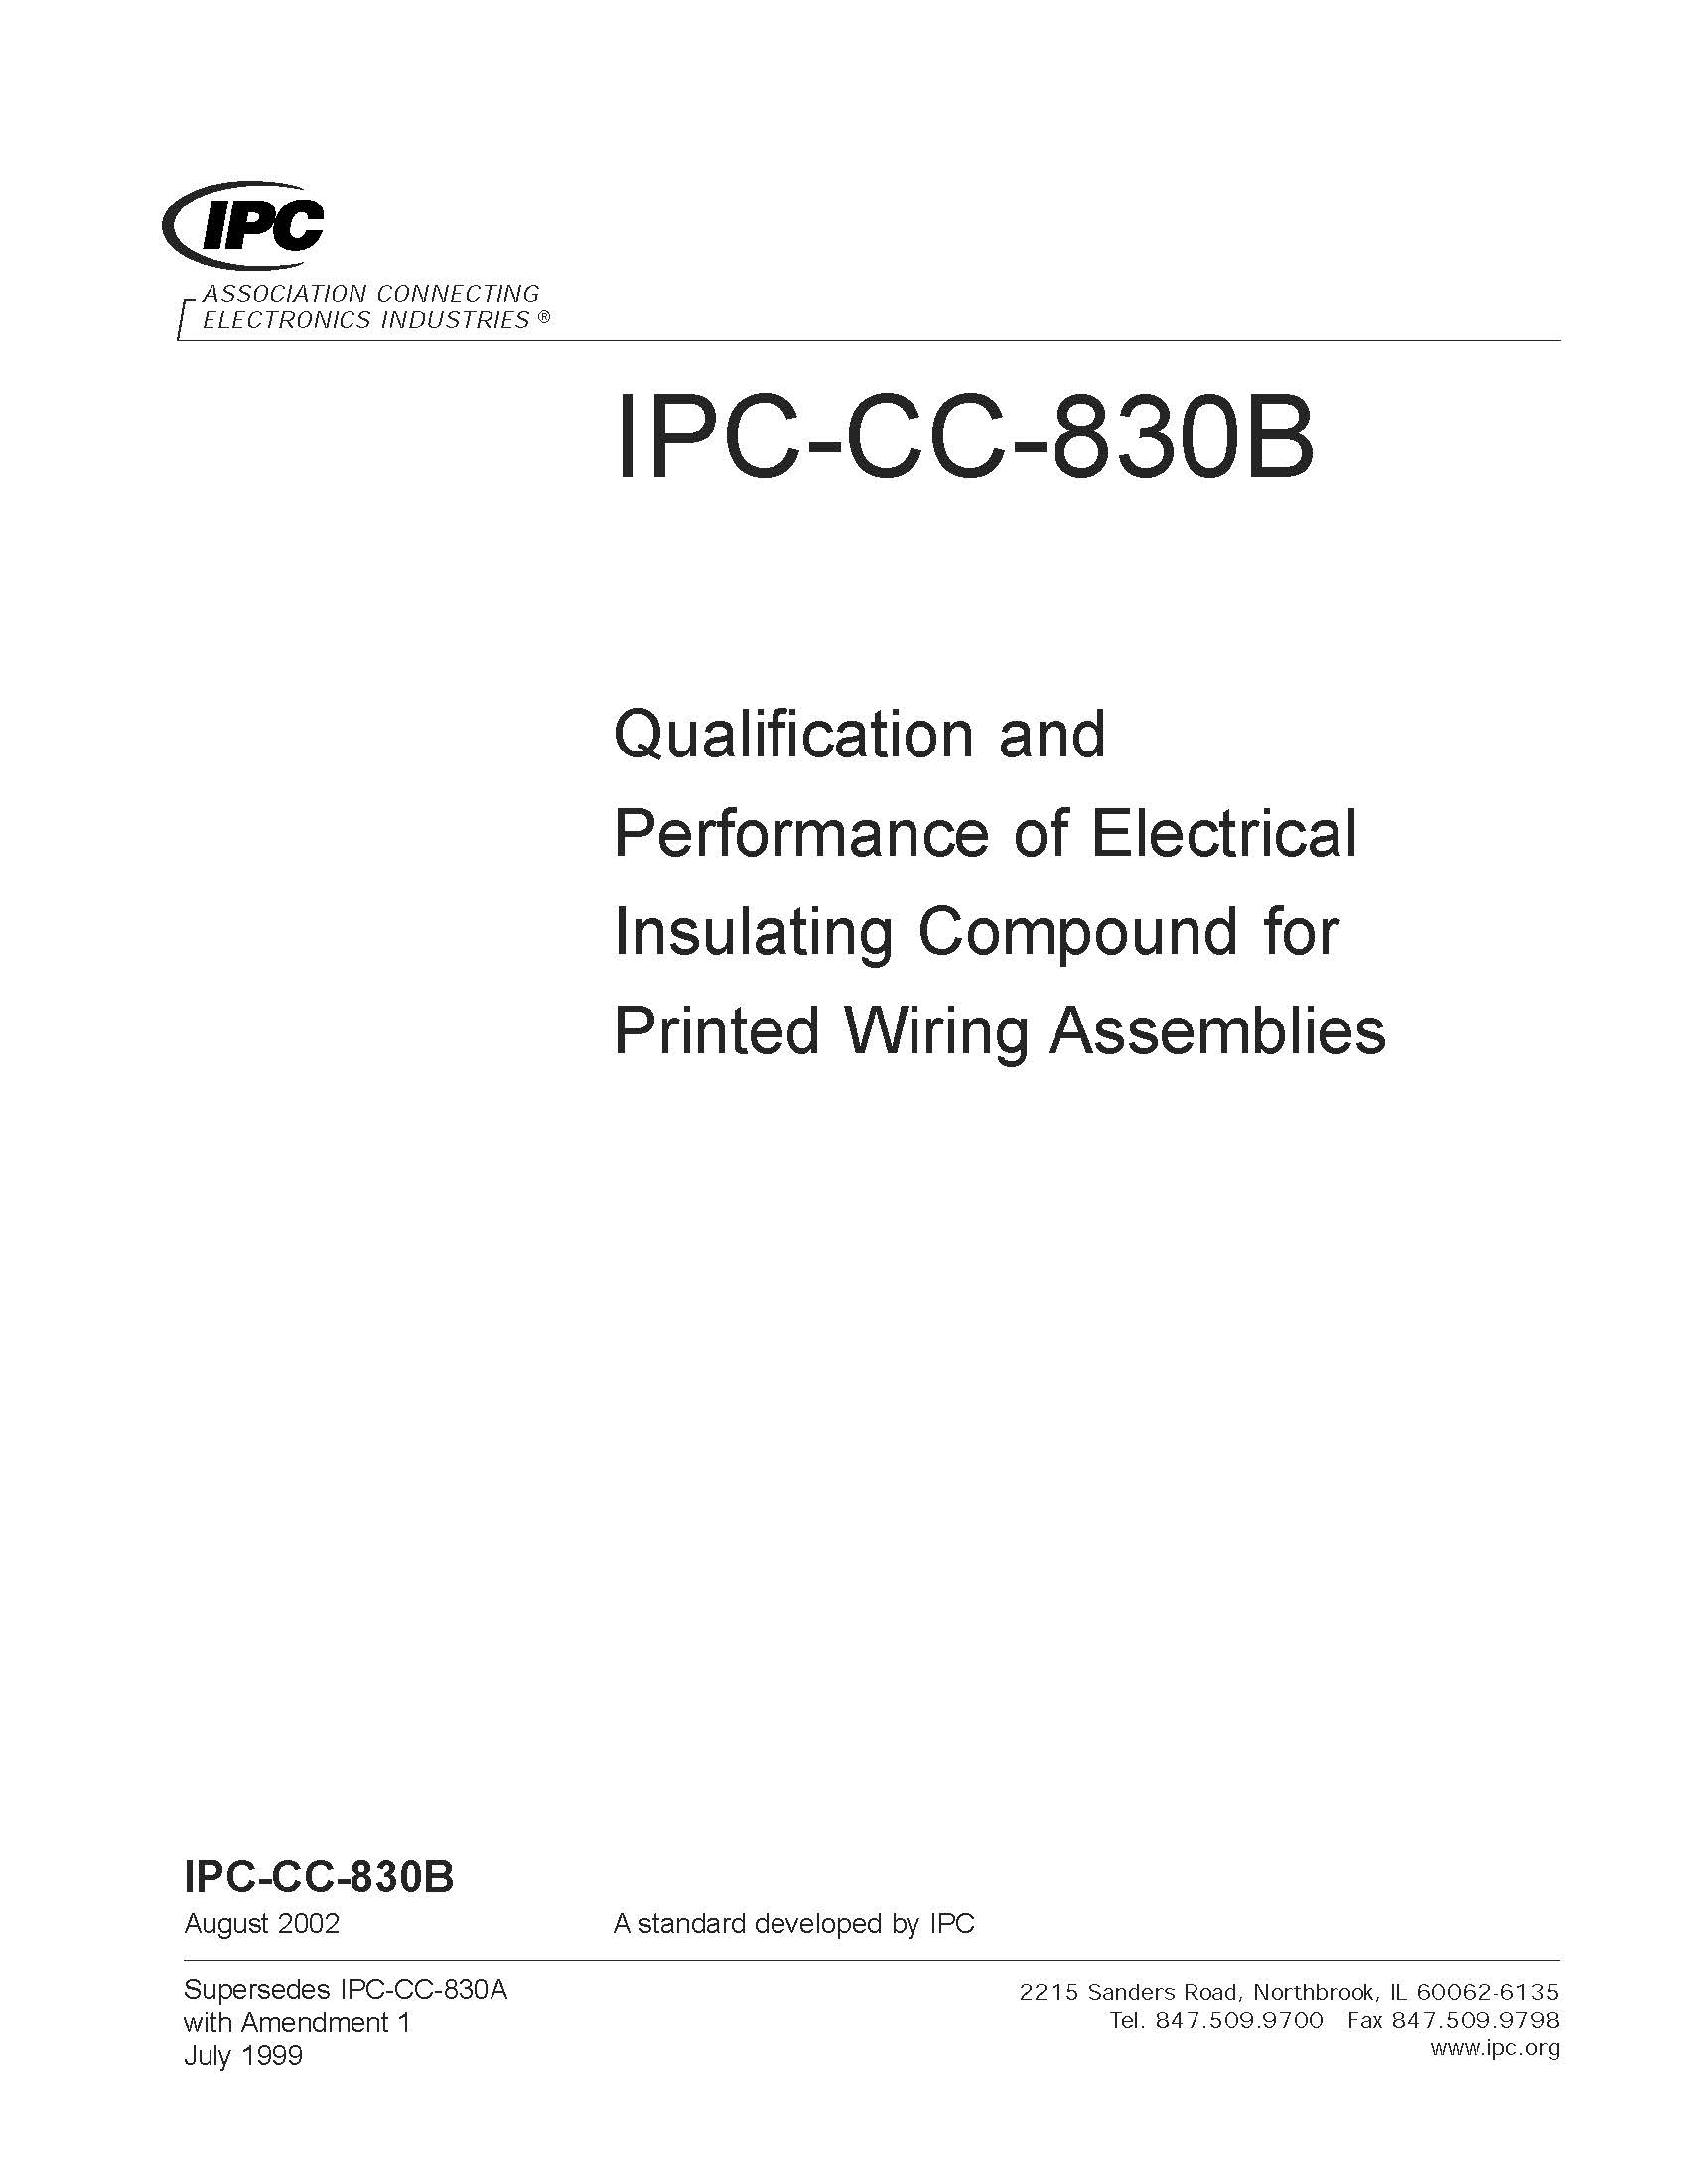 IPC-CC-830B-2002